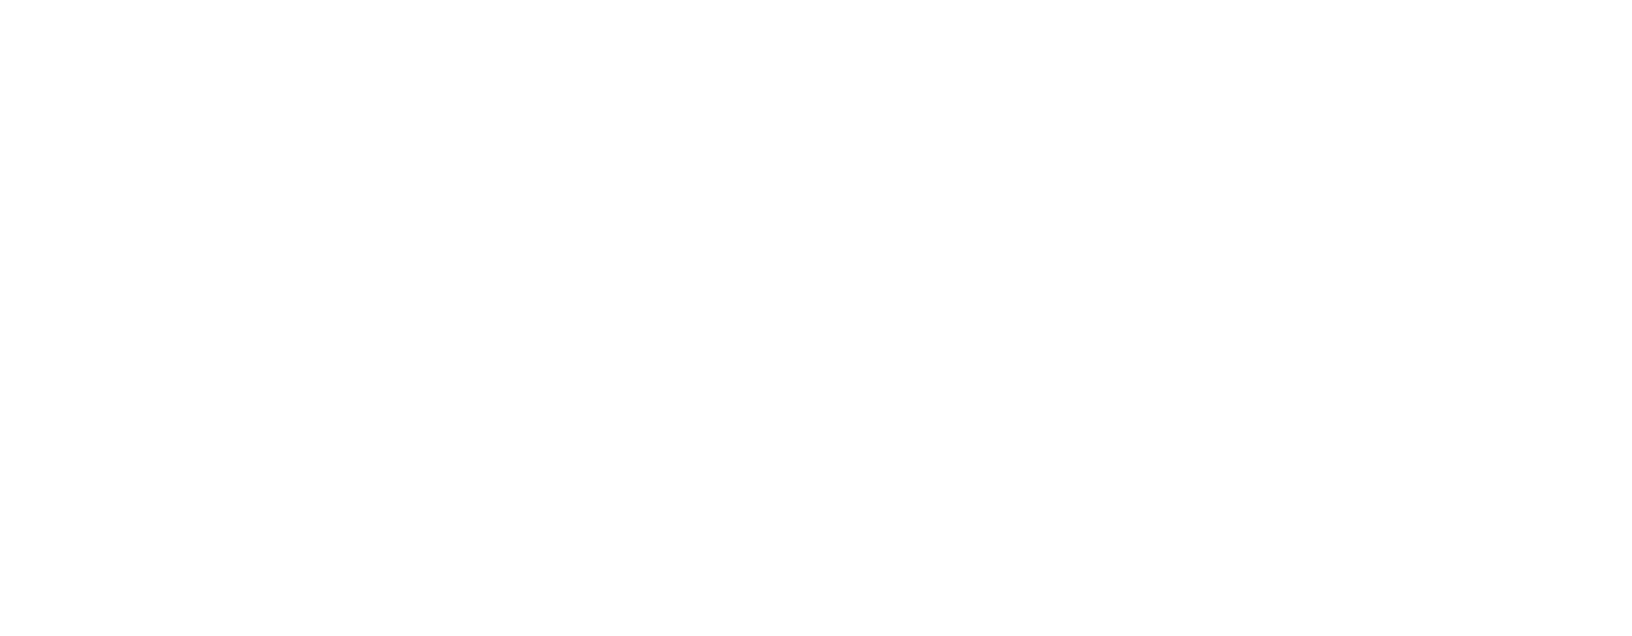  Stemma USRA - Ufficio Speciale per la Ricostruzione della città dell'Aquila